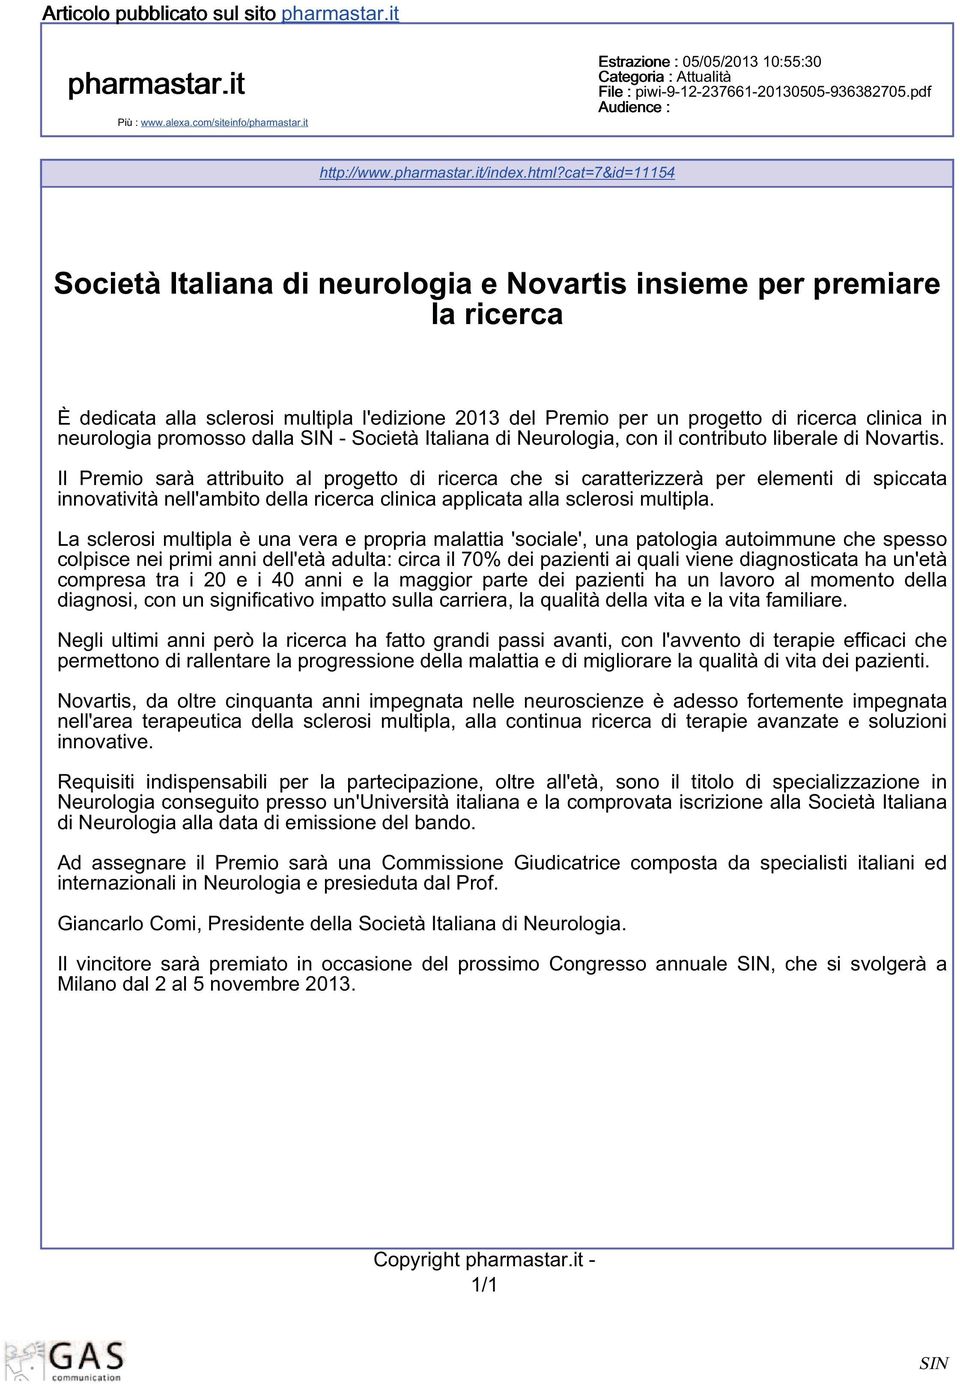 cat=7&id=11154 Società Italiana di neurologia e Novartis insieme per premiare la ricerca È dedicata alla sclerosi multipla l'edizione 2013 del Premio per un progetto di ricerca clinica in neurologia